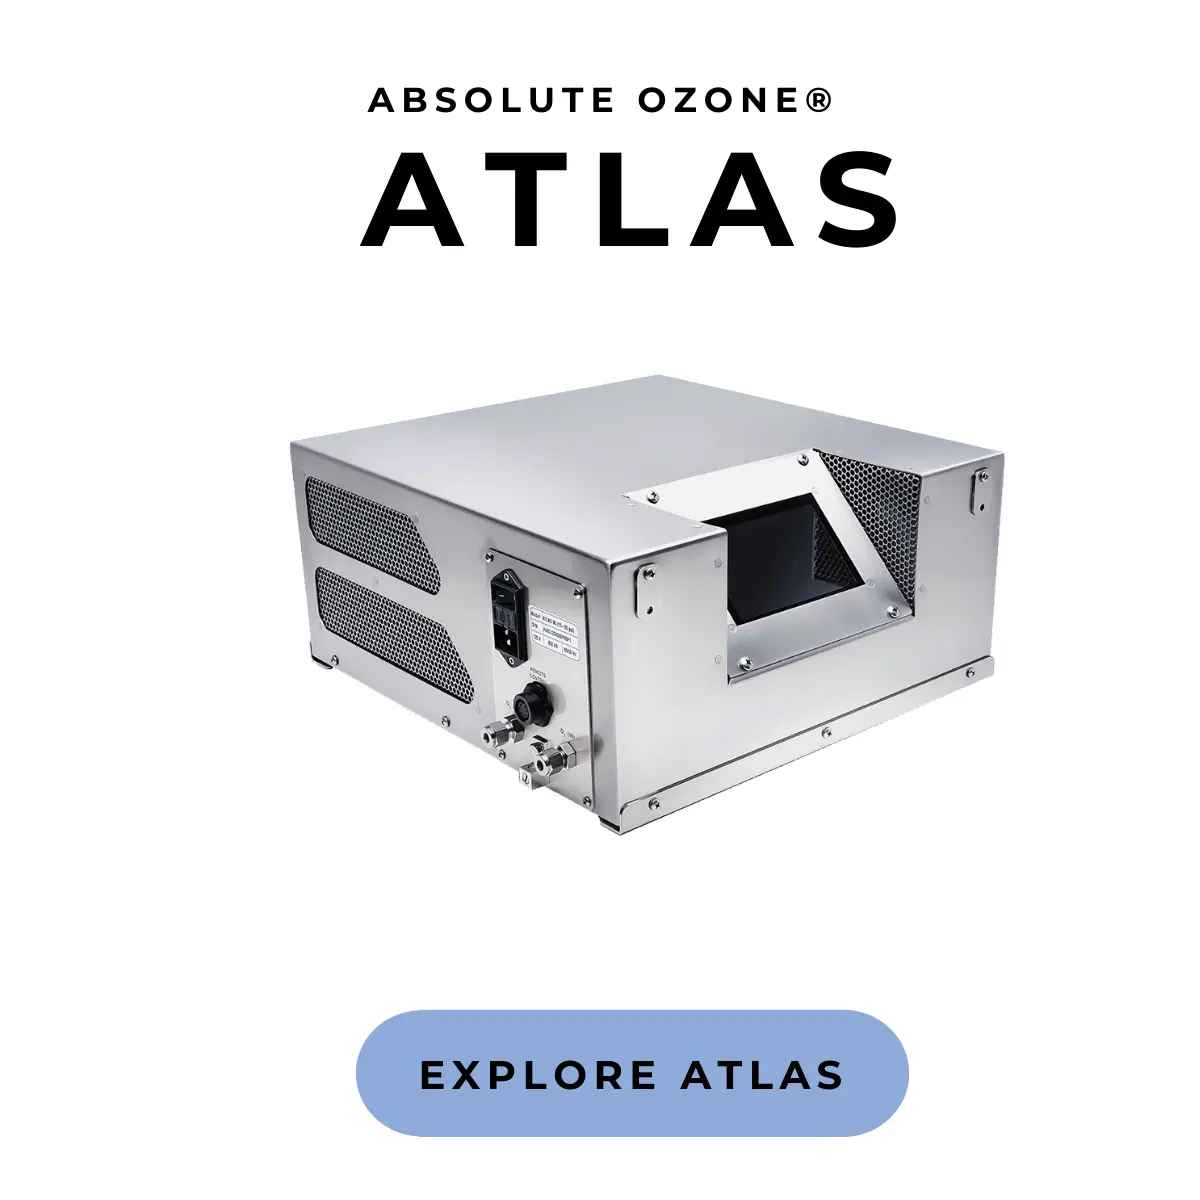 generador industrial de ozono ATLAS